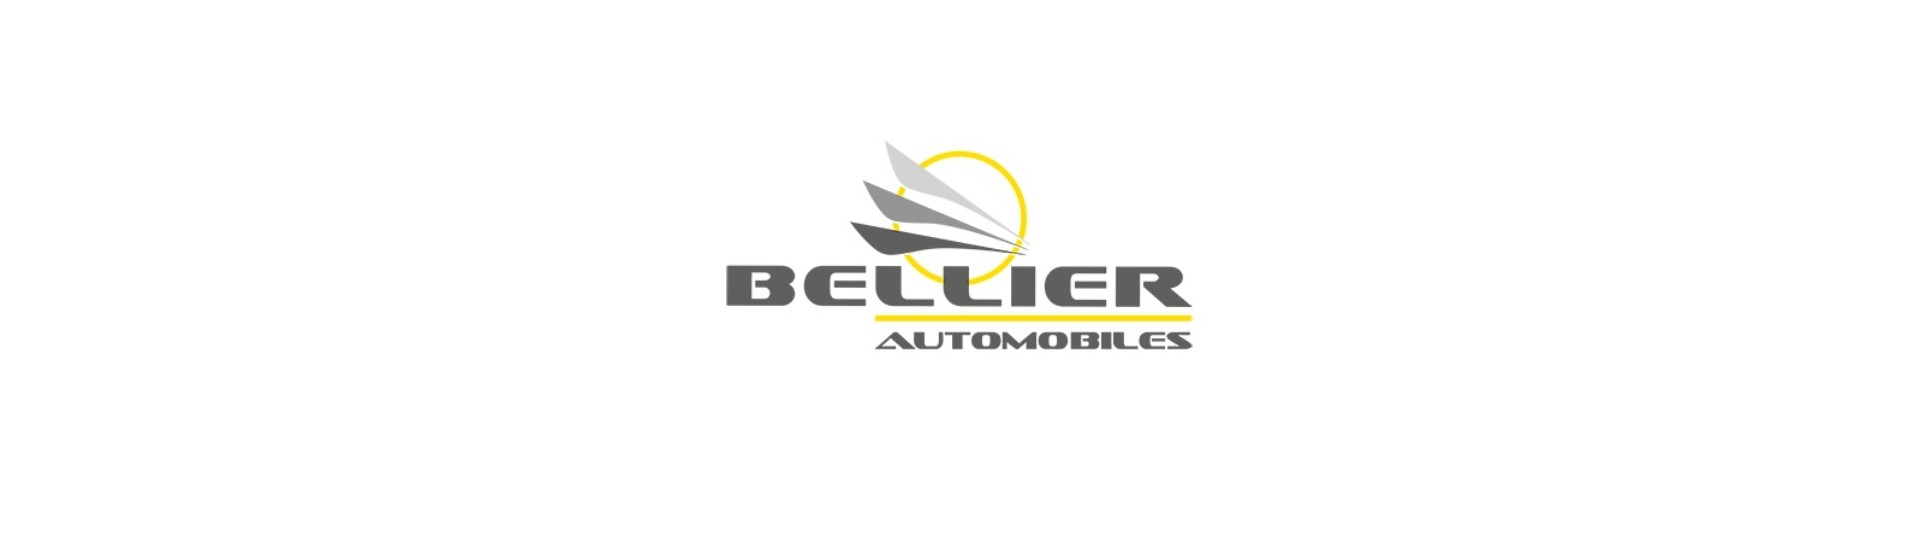 Relais / elektronische module für auto ohne lizenz Bellier